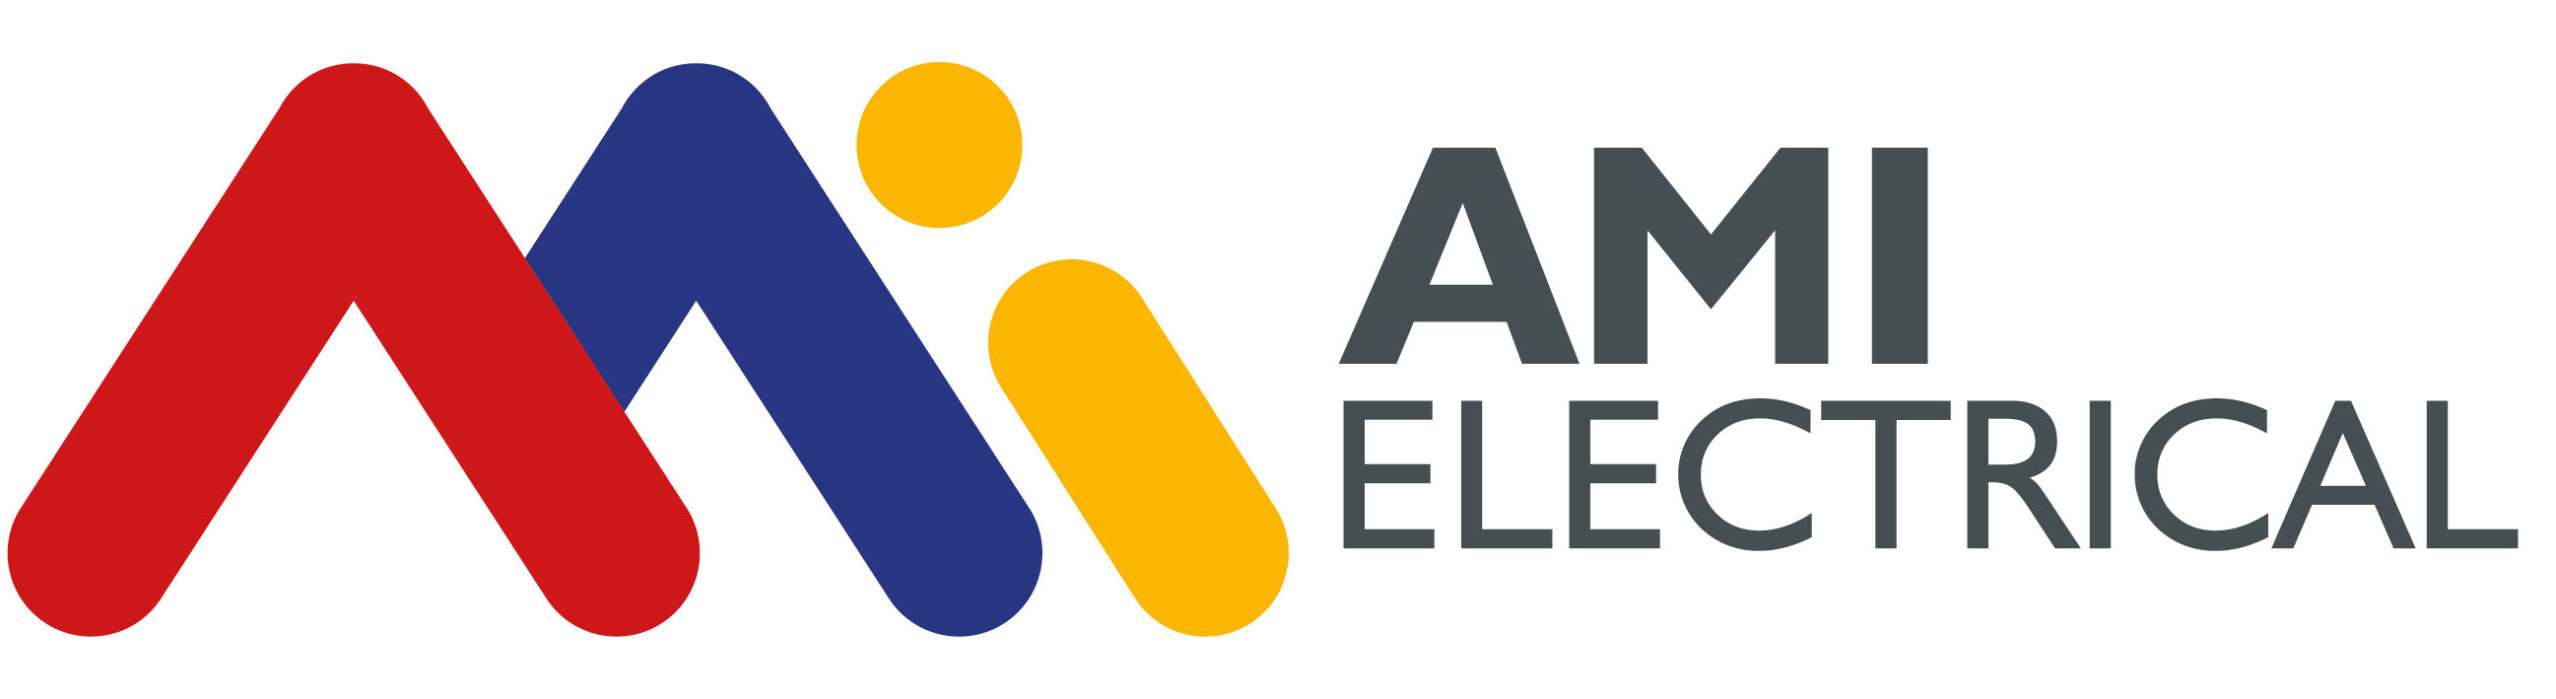 5308 AMI ELECTRICAL logo colour